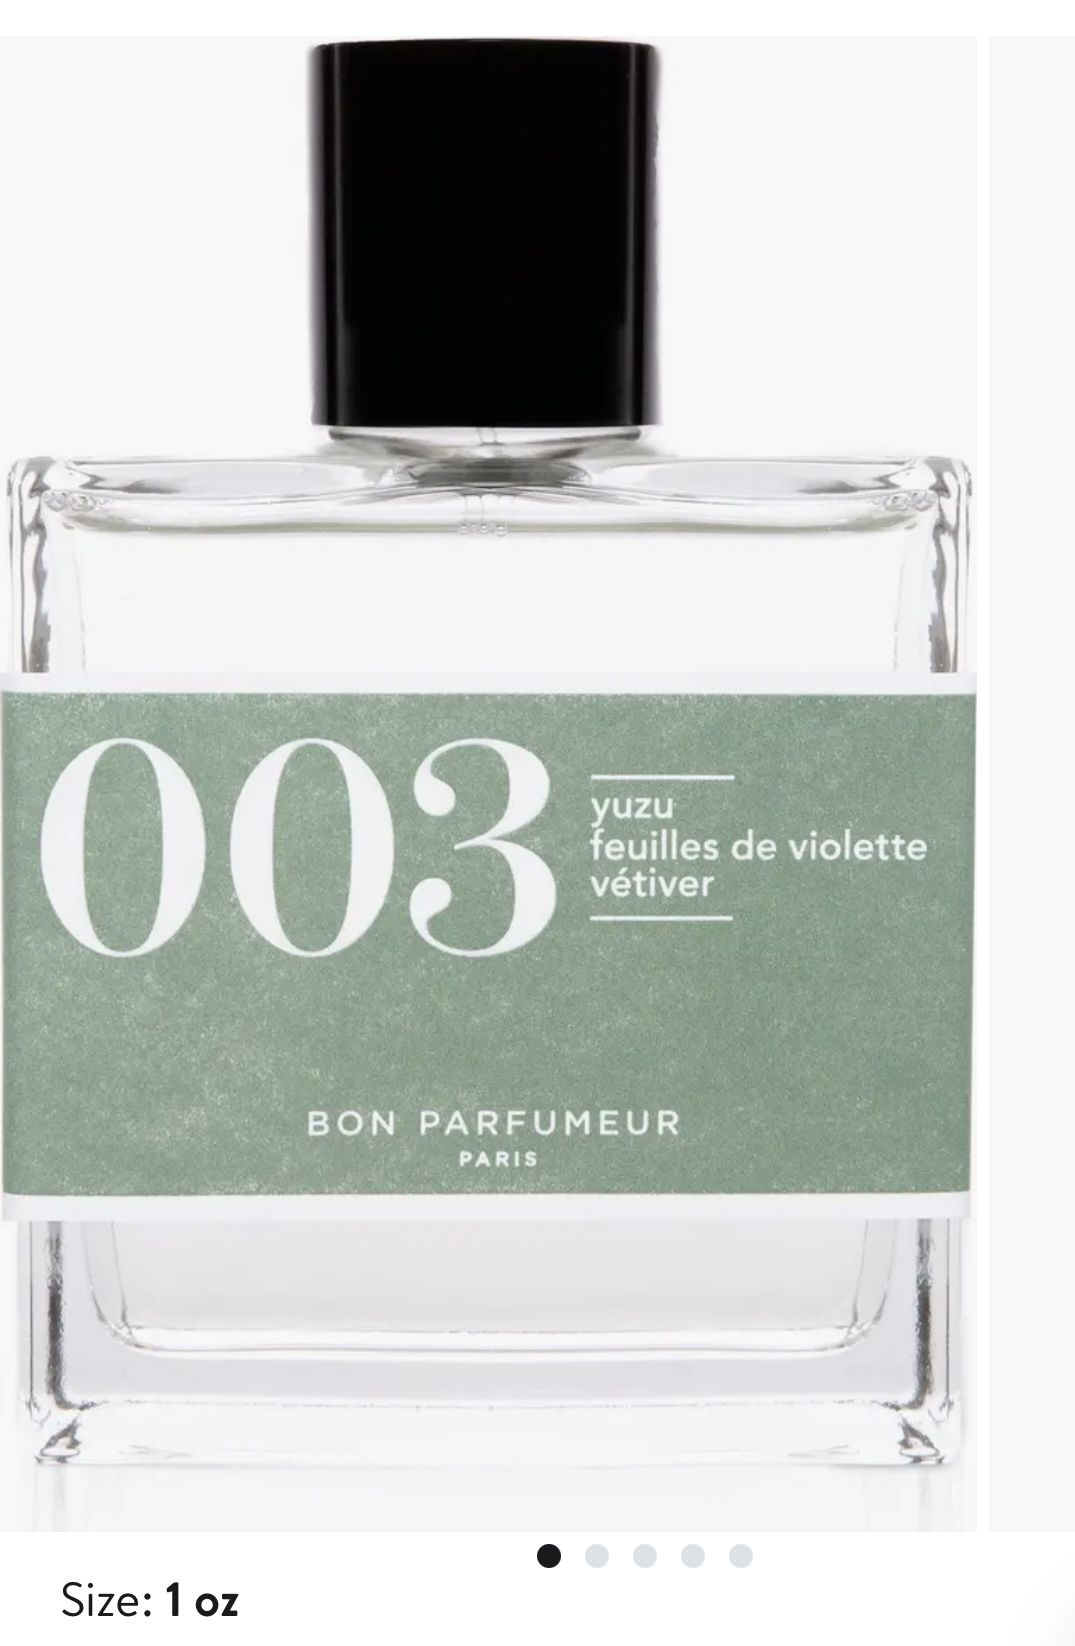 Bon Perfumer 003 Cologne Yuzu, Feuilles De Violette, Vetiver 